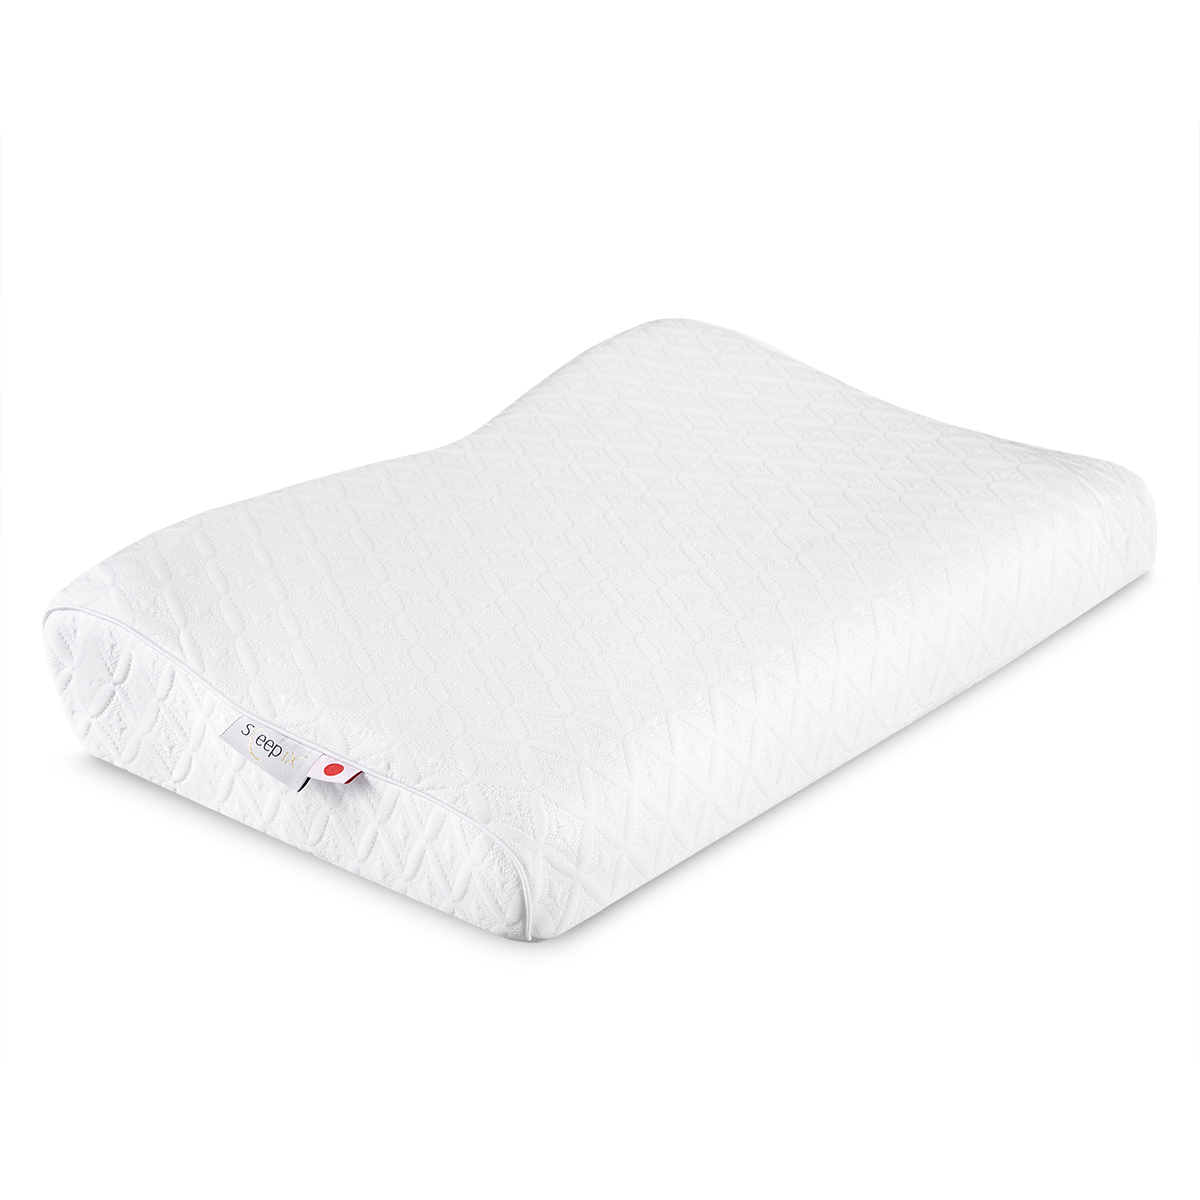 Анатомическая подушка Sleepix Нарита белая 54х32х6/10 см